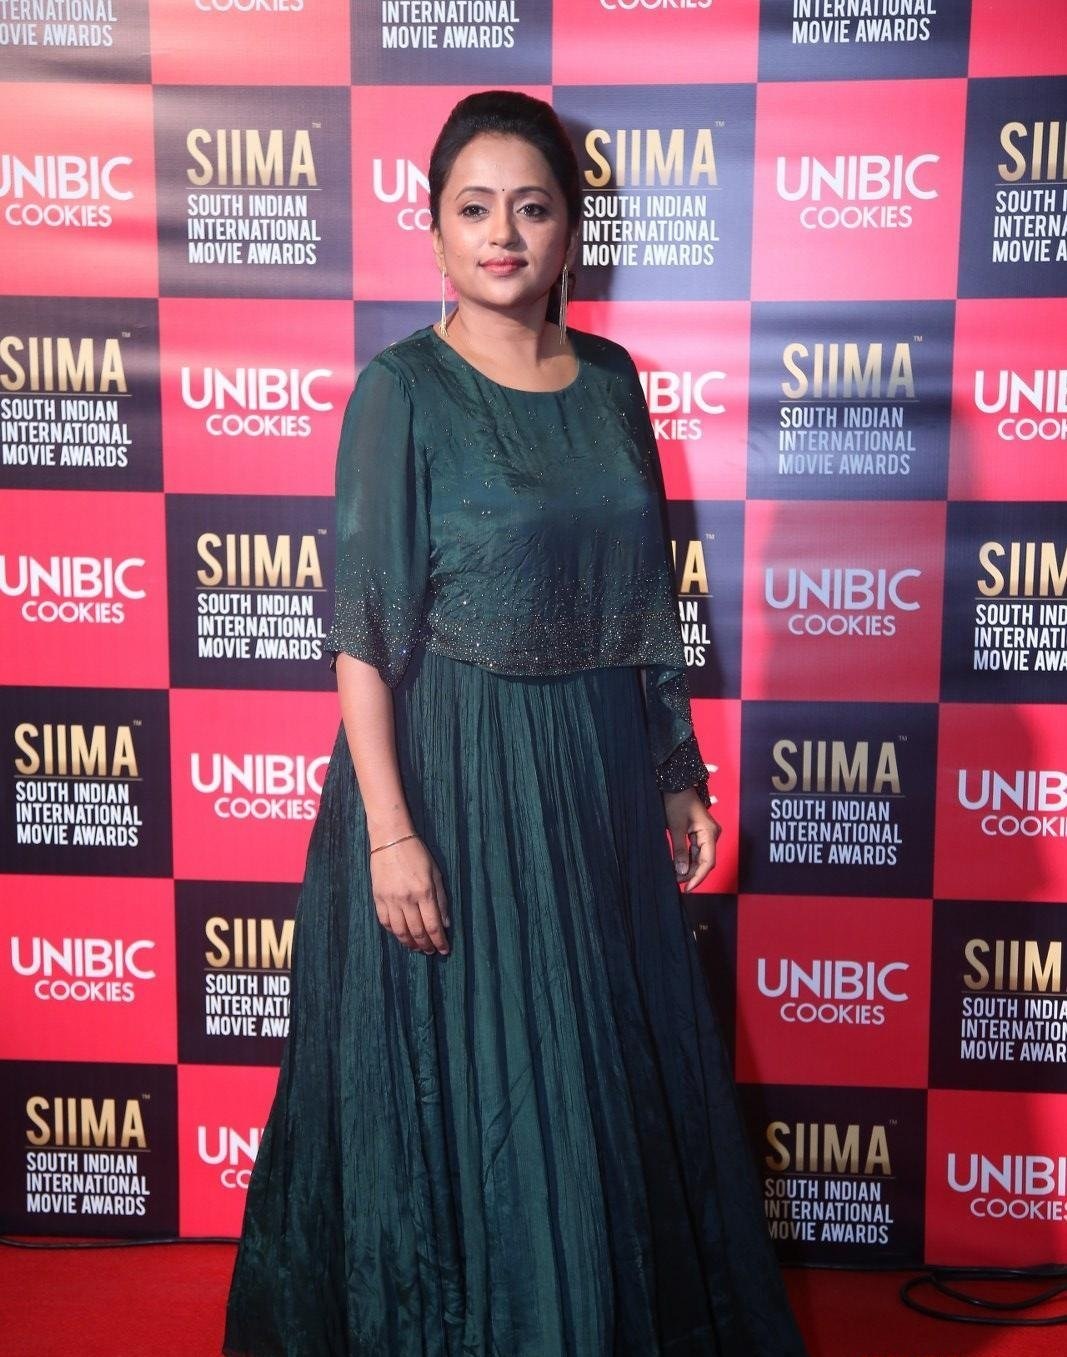 Anchor Suma Stills From SIIMA Awards 2019 Red Carpet